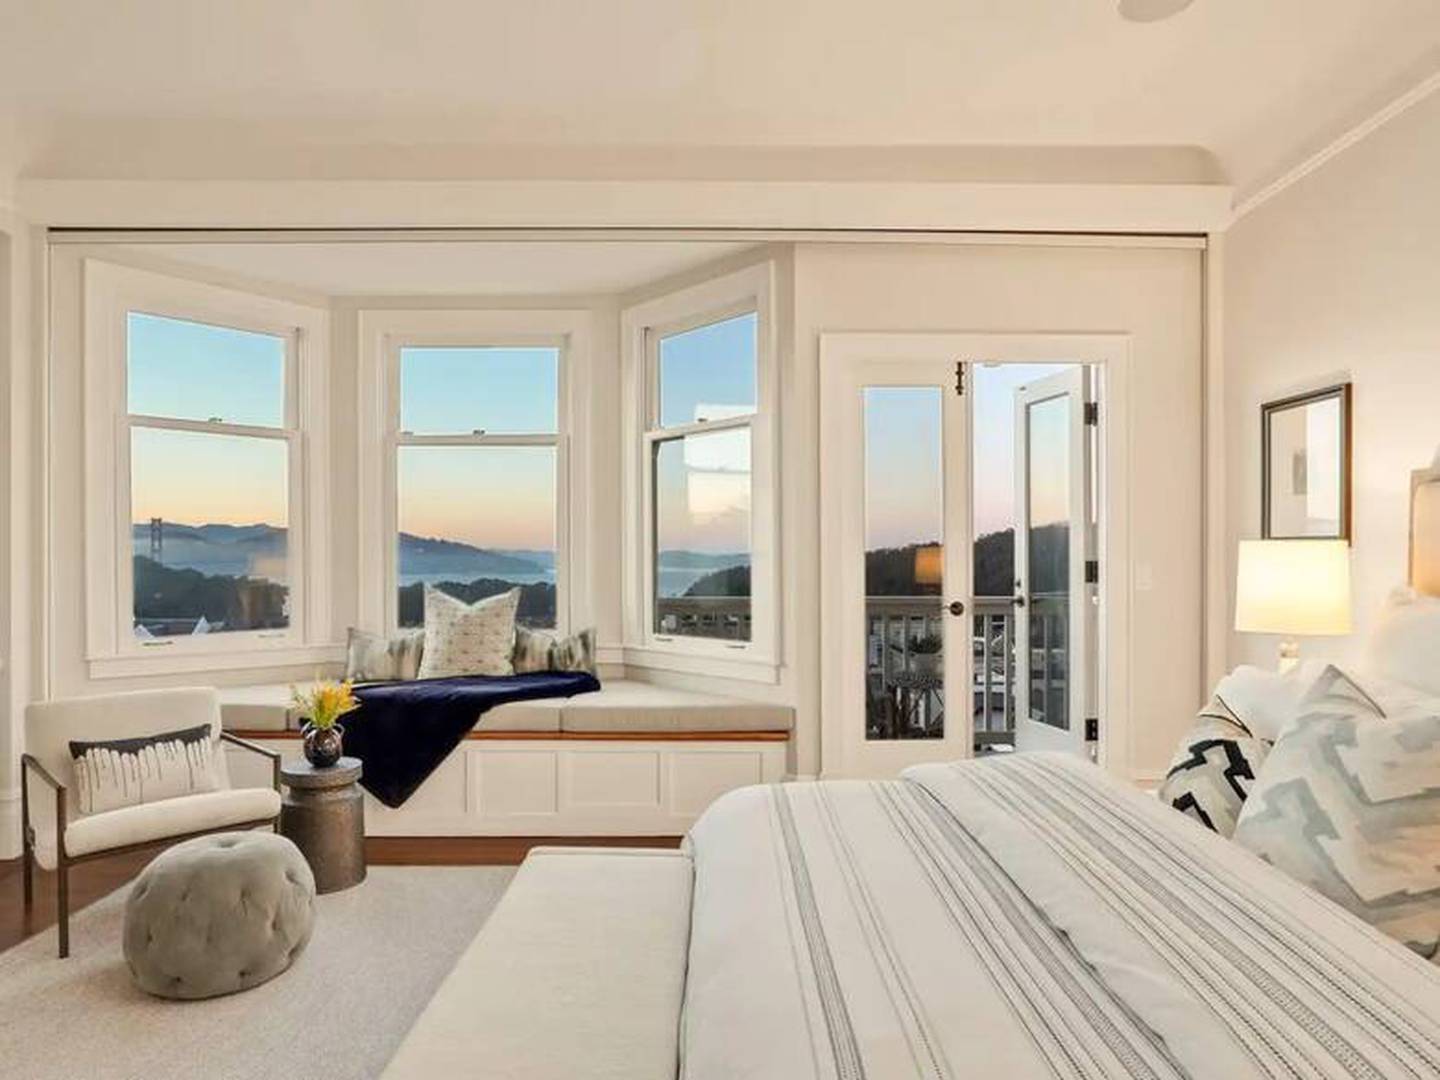 Uno de los dormitorios de la casa de Julia Roberts ofrece una vista hermoso desde sus ventanales. Foto: Sotheby's International Realty